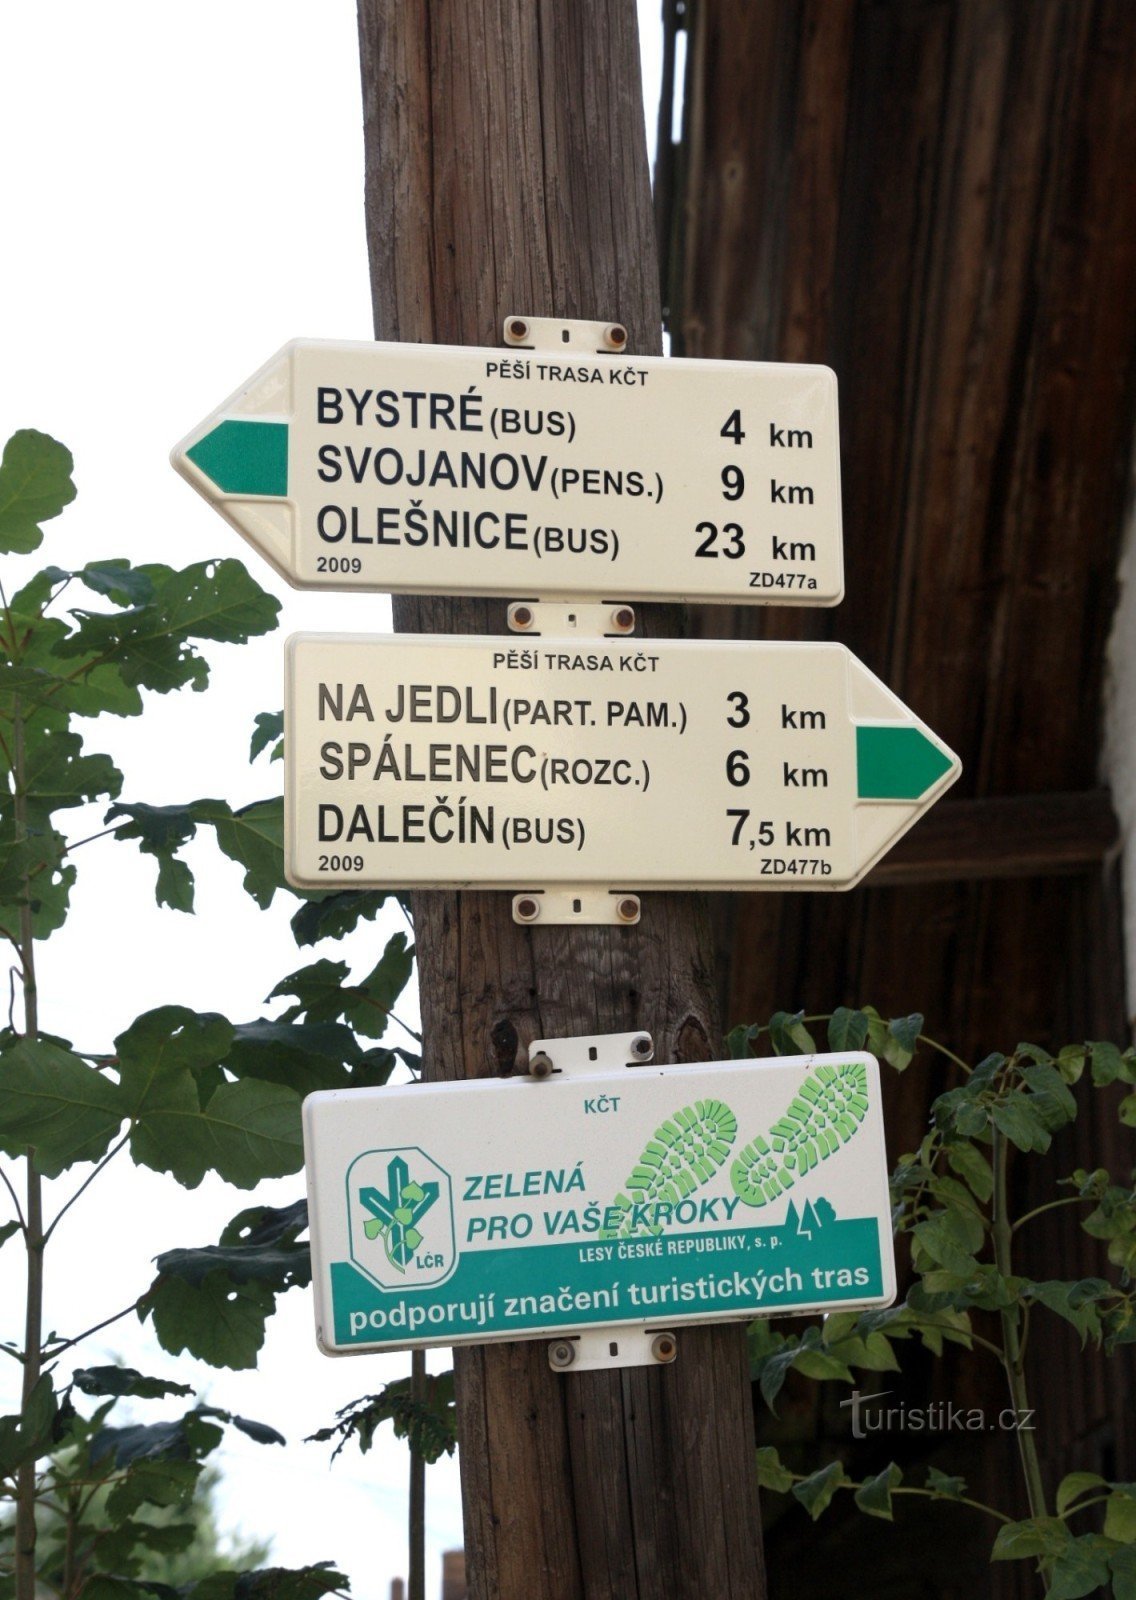 Răscruce turistică Sulkovec